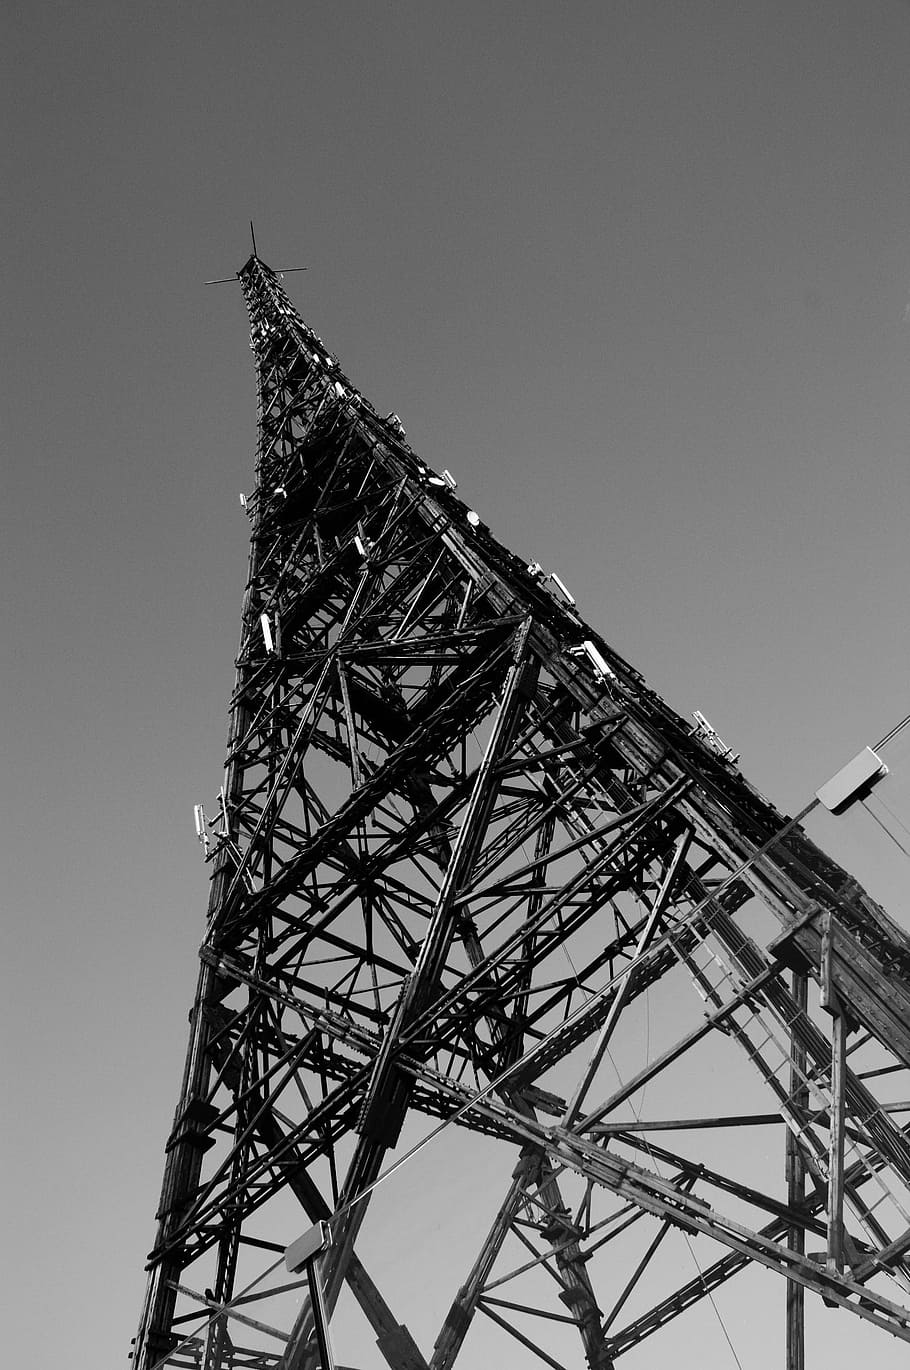 gliwice, torre, radio, metal, polonia, comunicación, tecnología, equipo de telecomunicaciones, torre de comunicaciones, tecnología inalámbrica